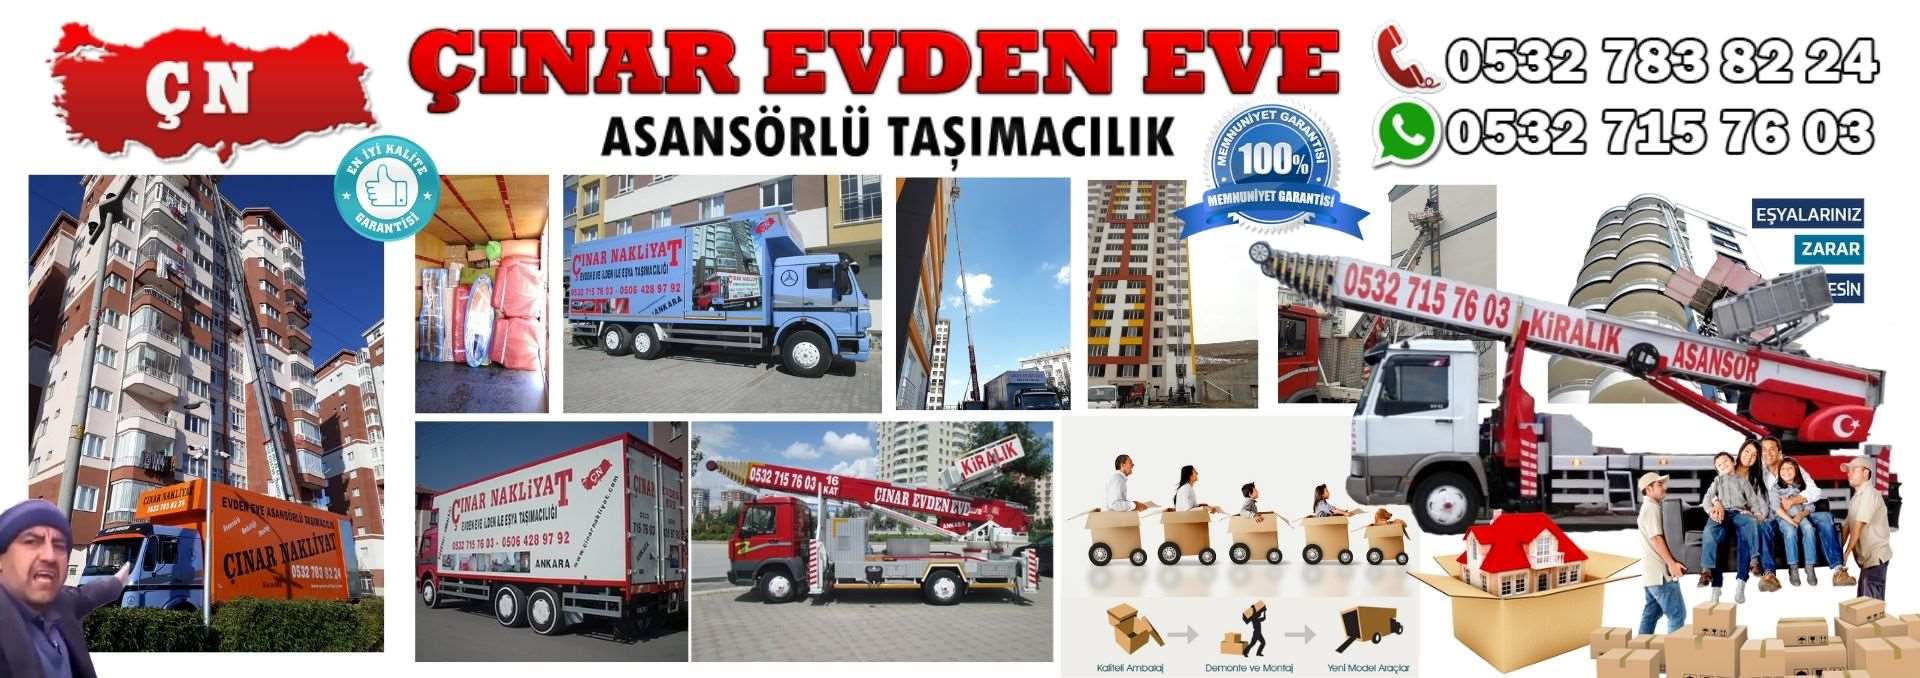 Ankara Haymana Evden Eve Asansörlü Ev Eşyası Taşıma 0532 715 76 03